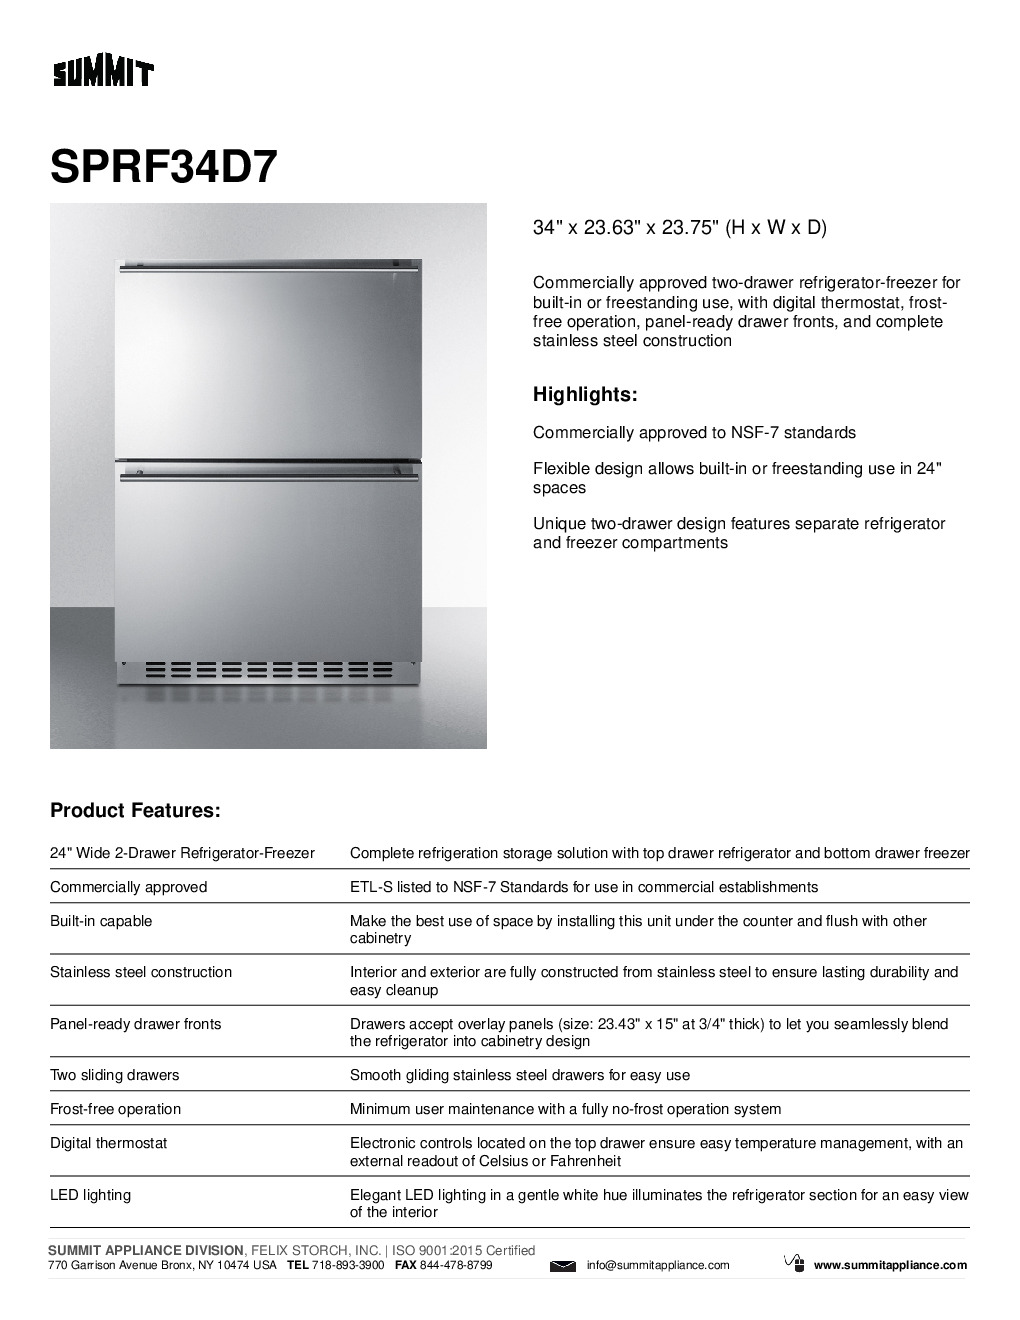 Summit SPRF34D7 Reach-In Undercounter Refrigerator Freezer